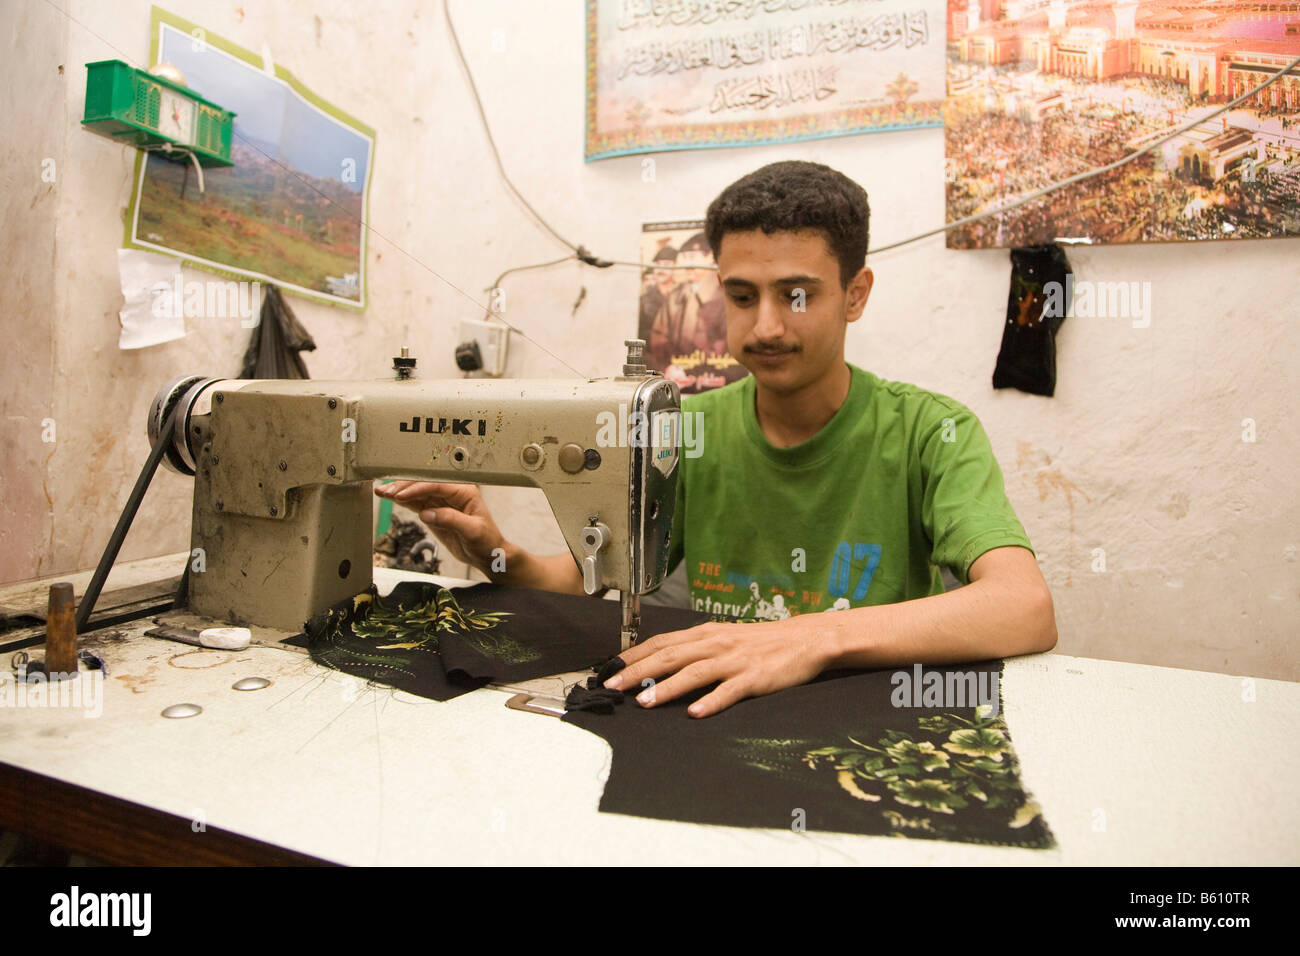 Schneider mit einer Nähmaschine, tailor Shop, San a, Jemen, Nahost  Stockfotografie - Alamy